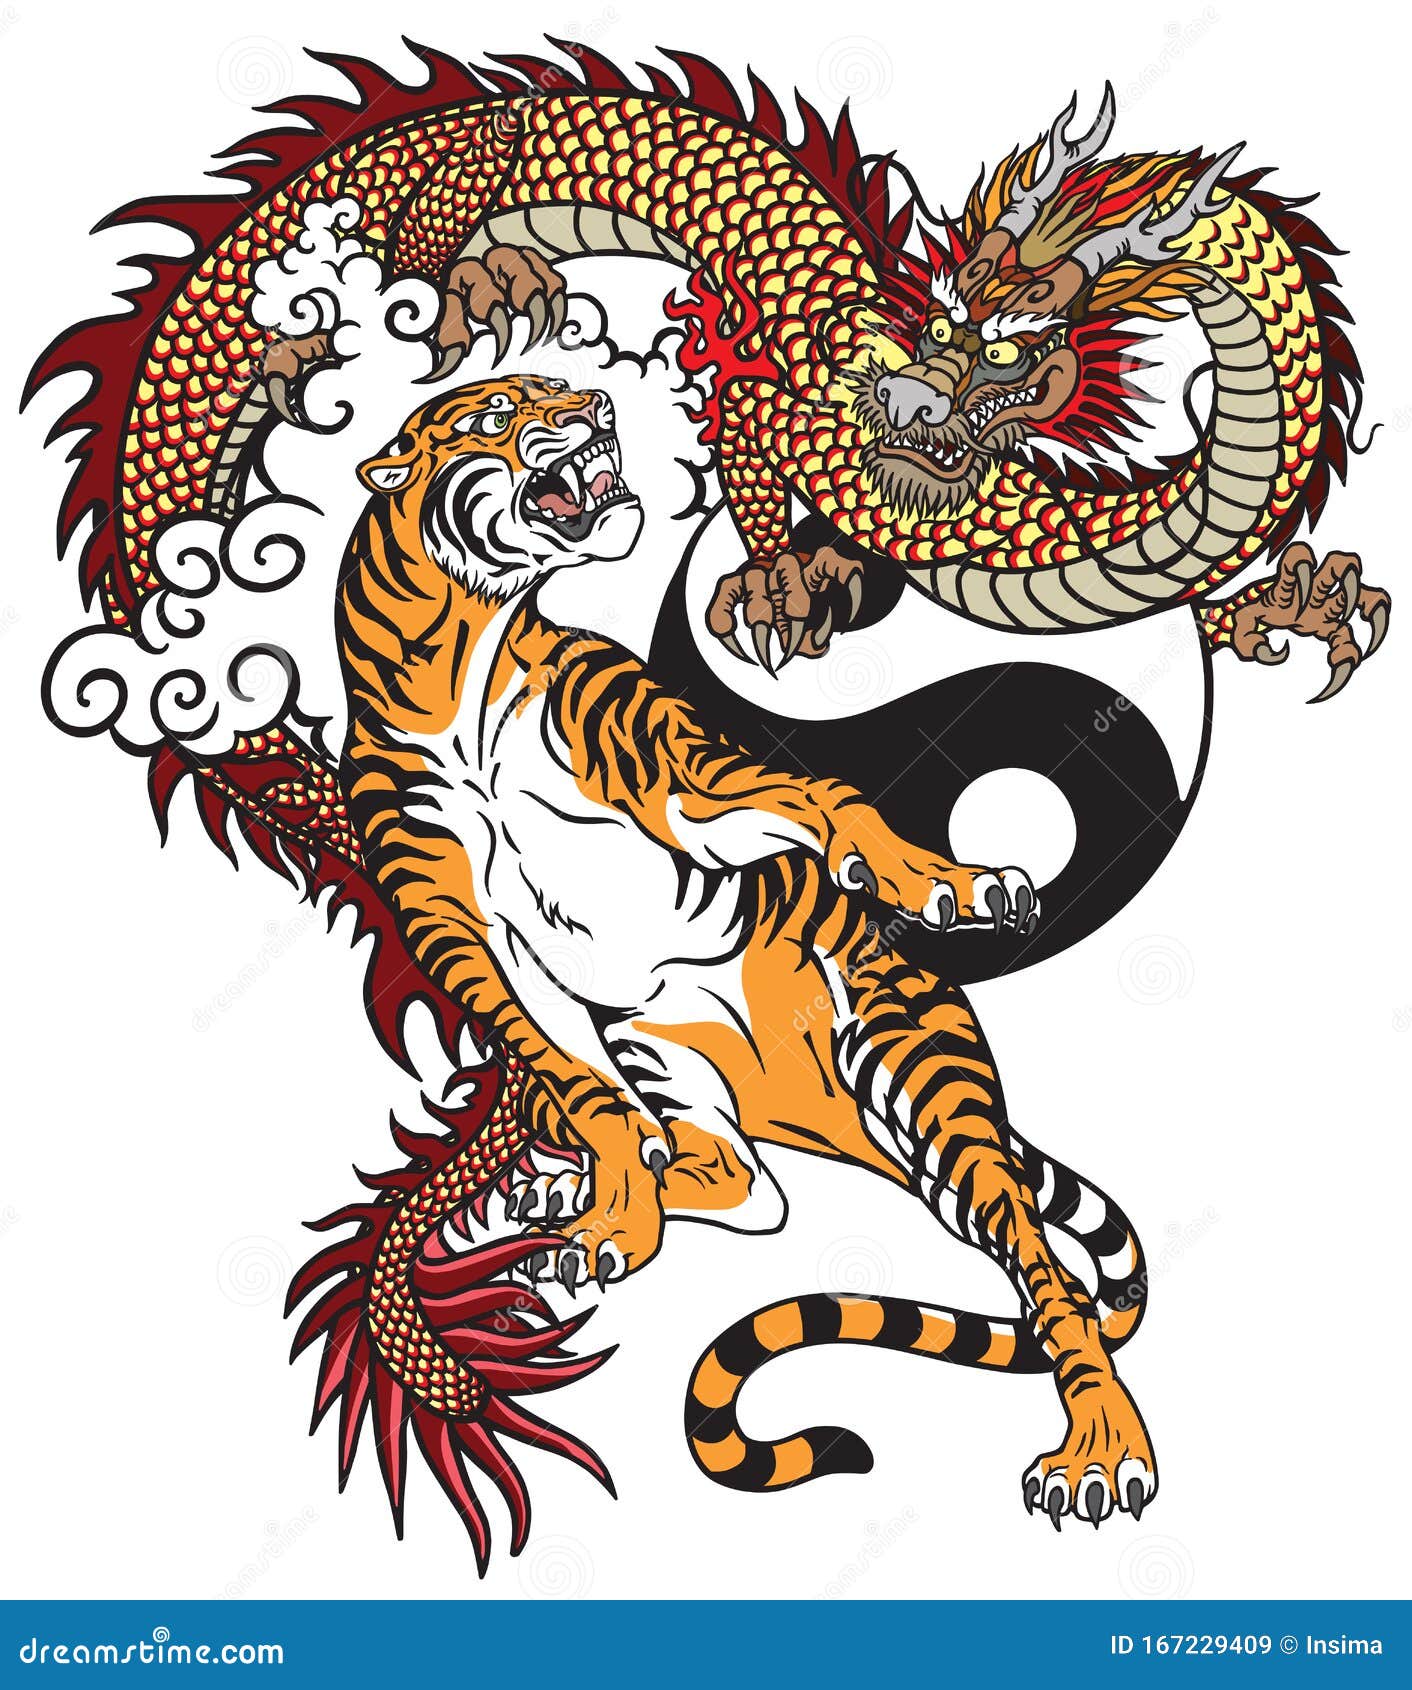 Dragon versus tiger tattoo stock vector. Illustration of rival - 167229409